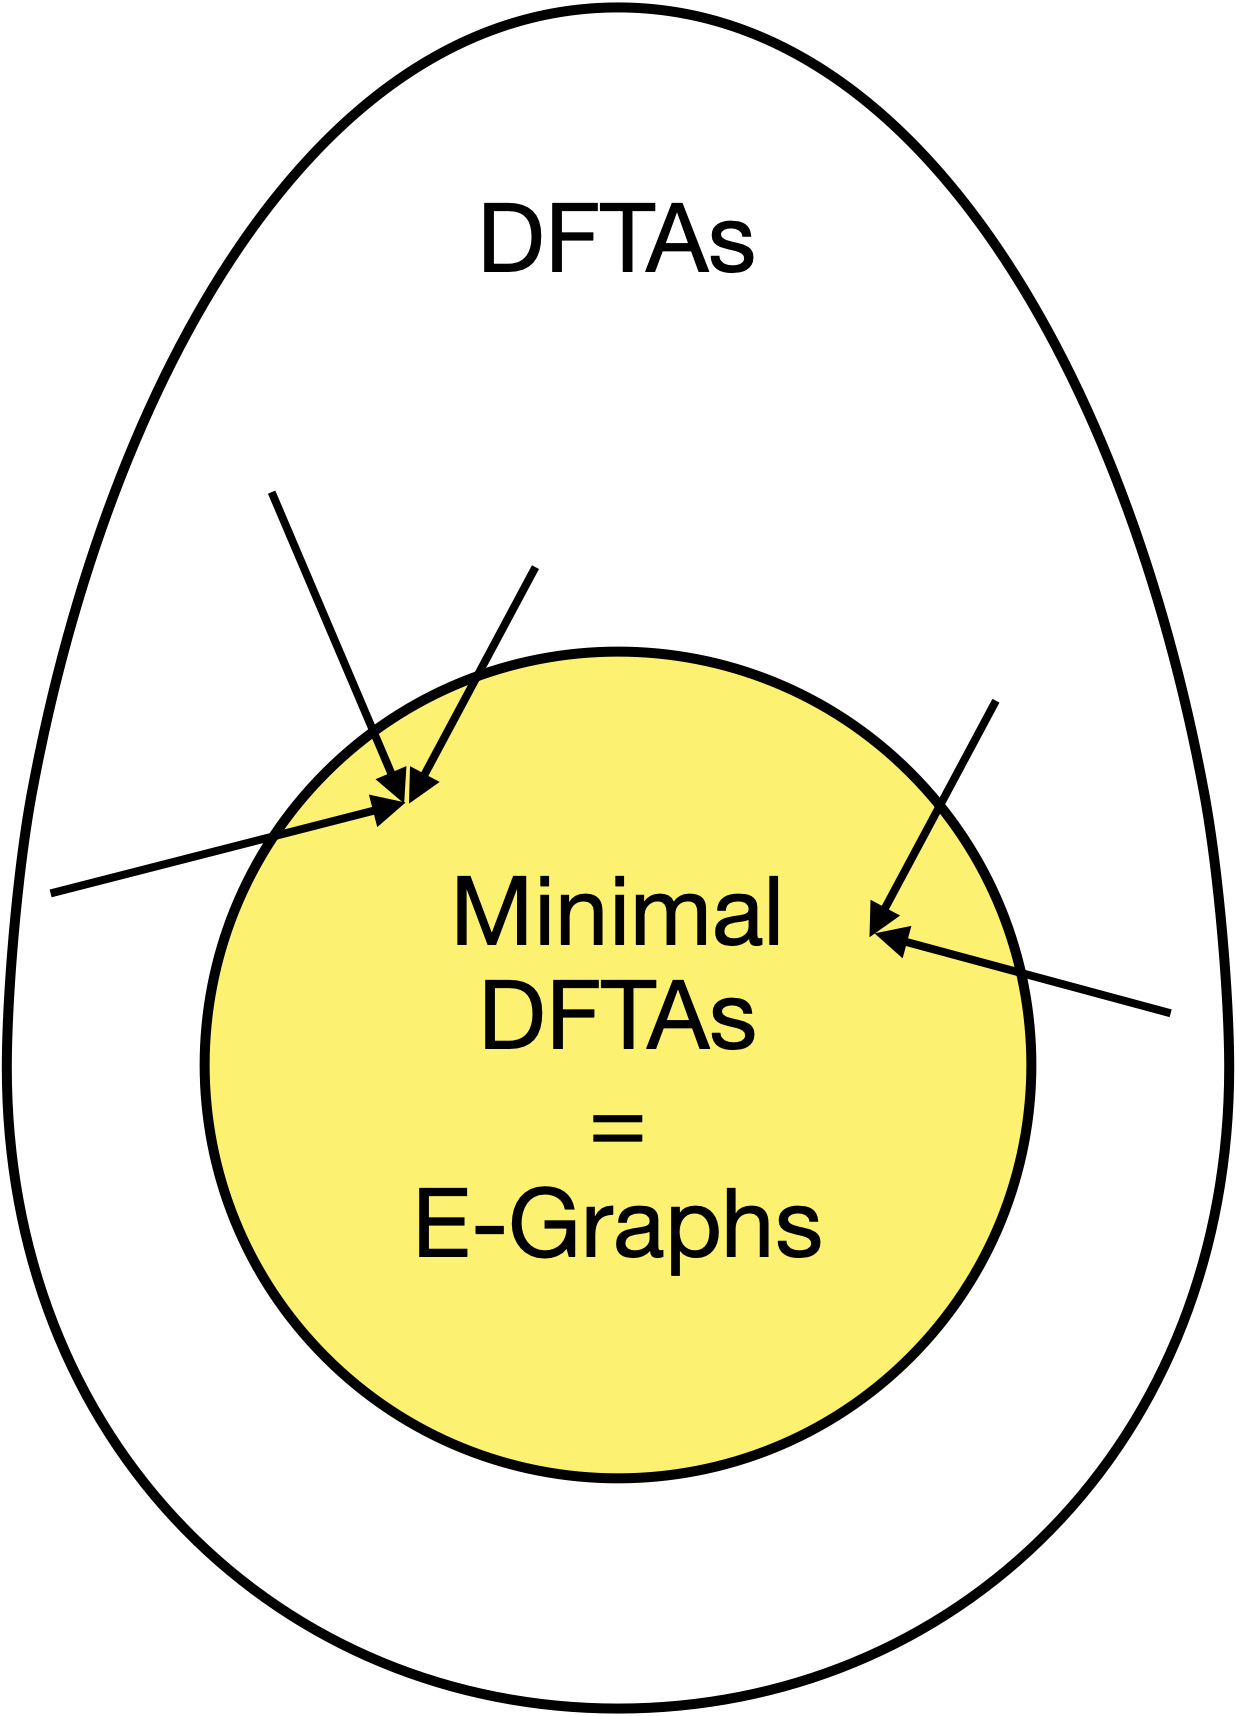 E-graphs are minimal DFTAs.